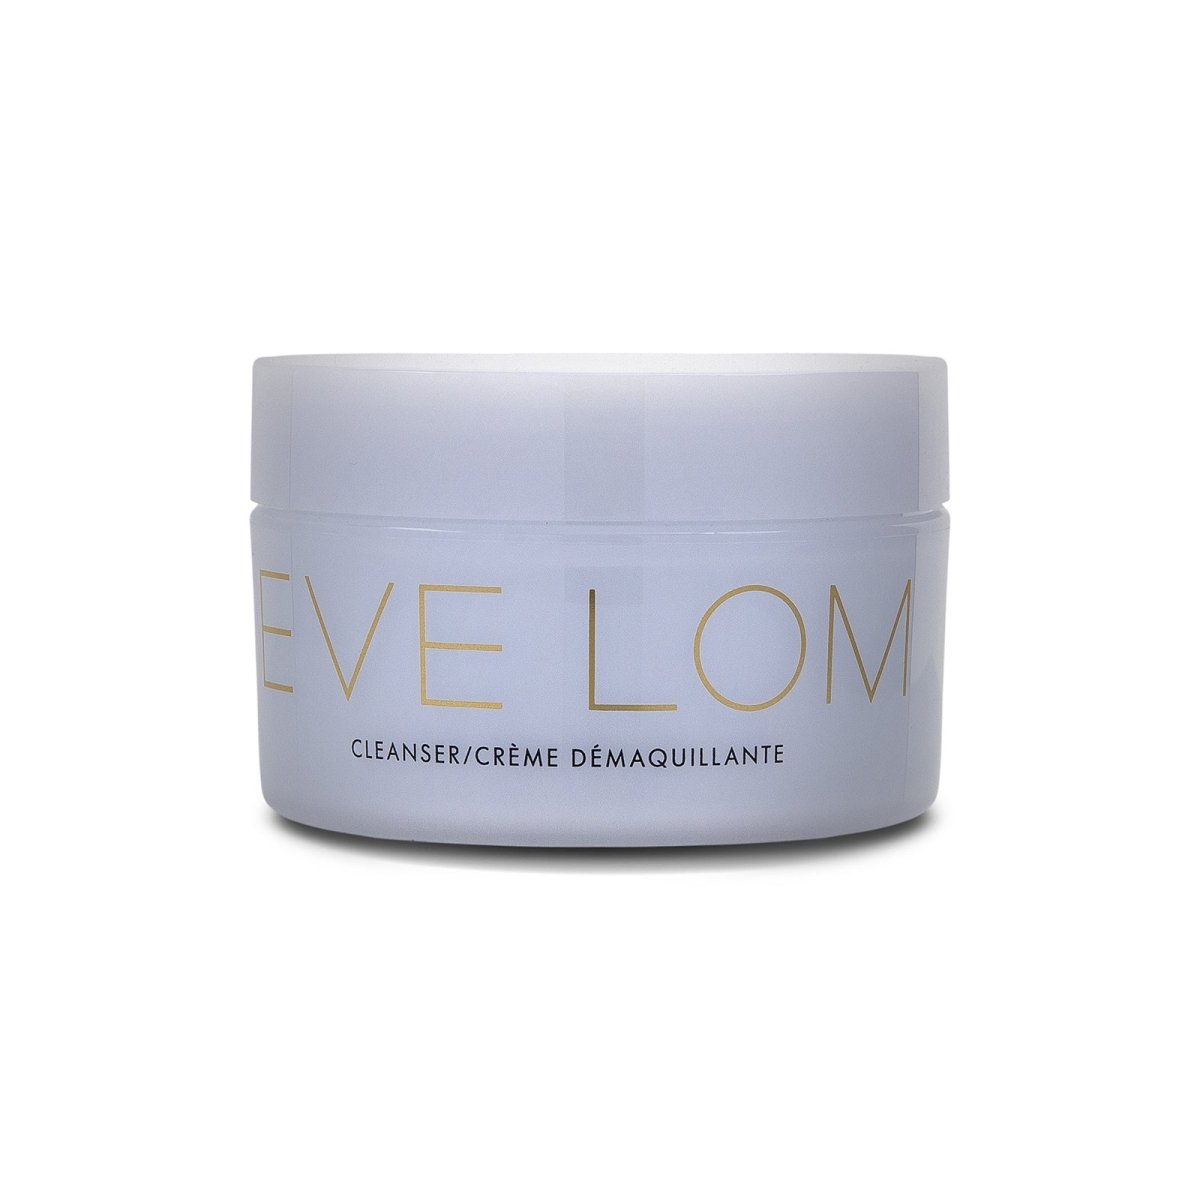 Eve Lom Cleanser - SkincareEssentials